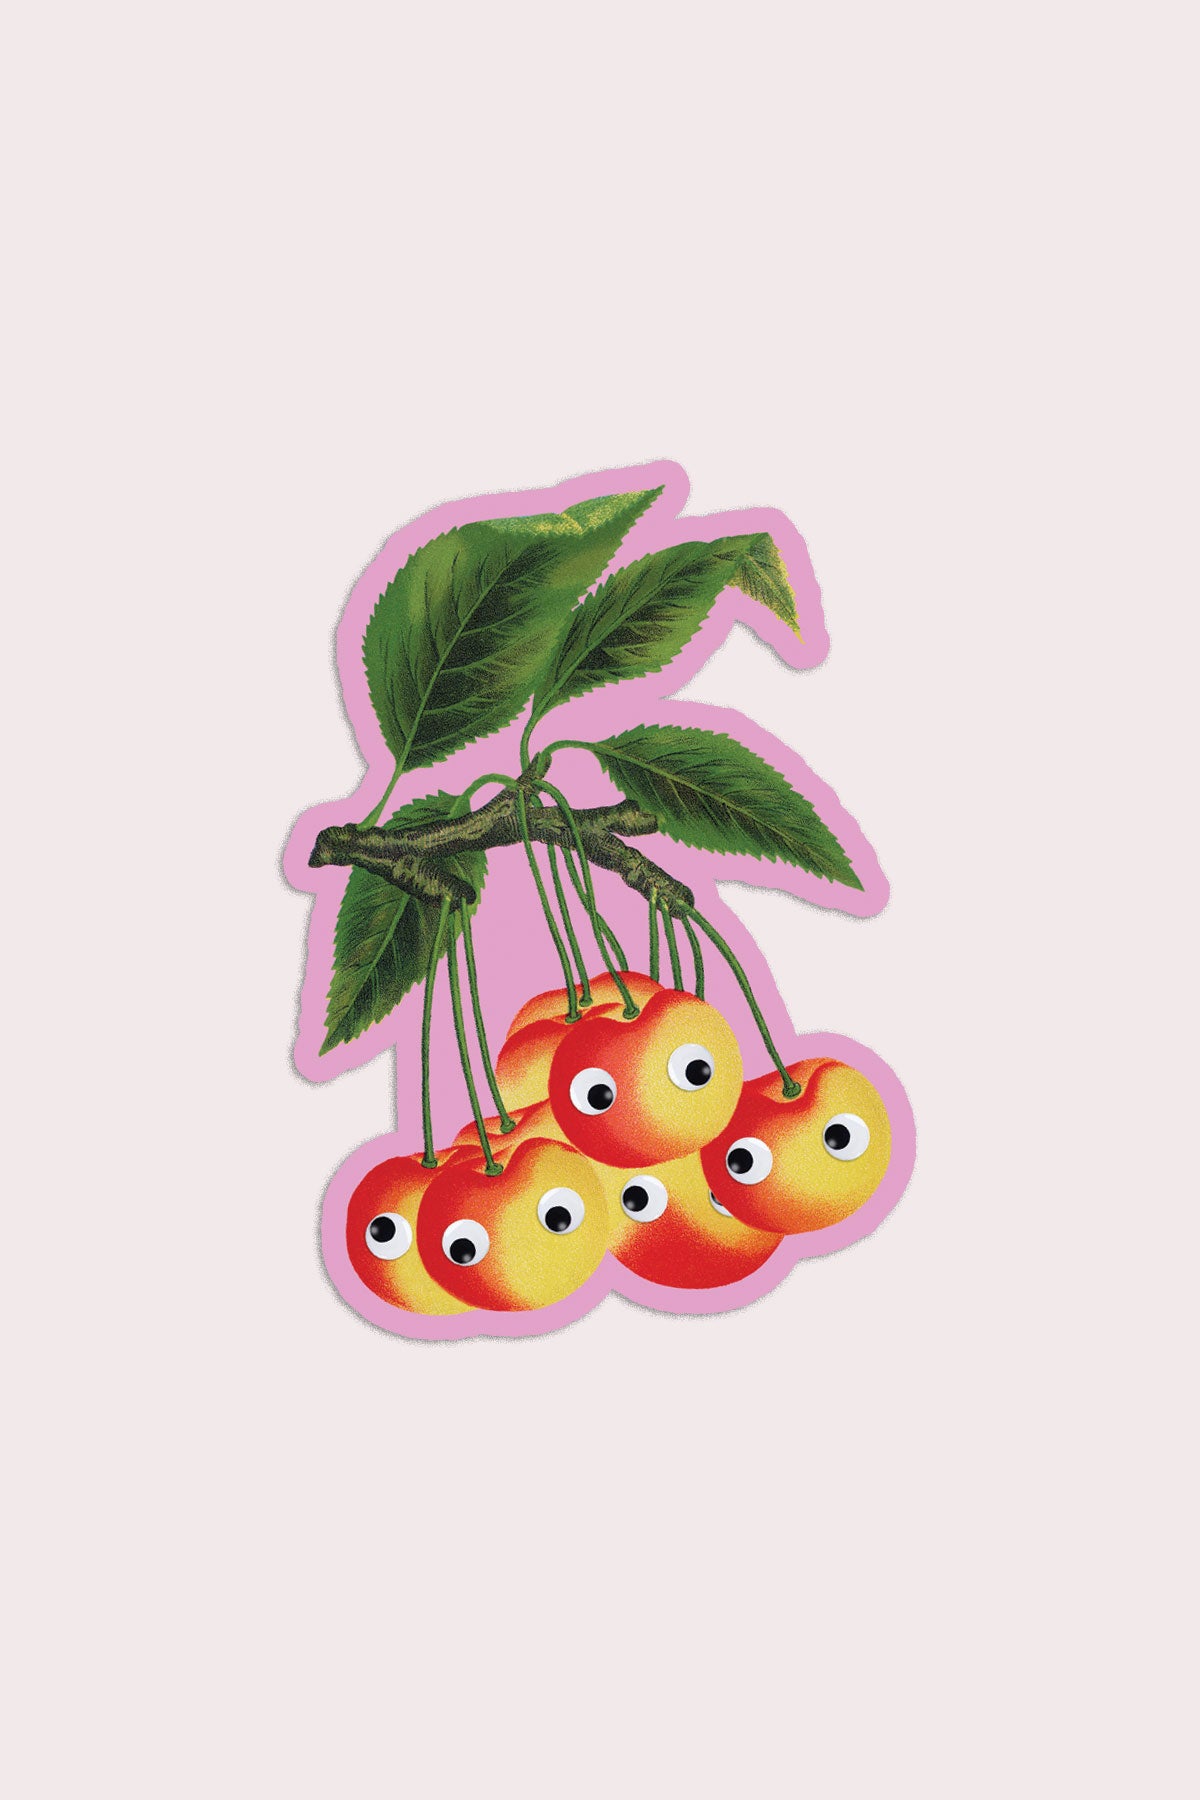 Autocollant "Googly Cherries"